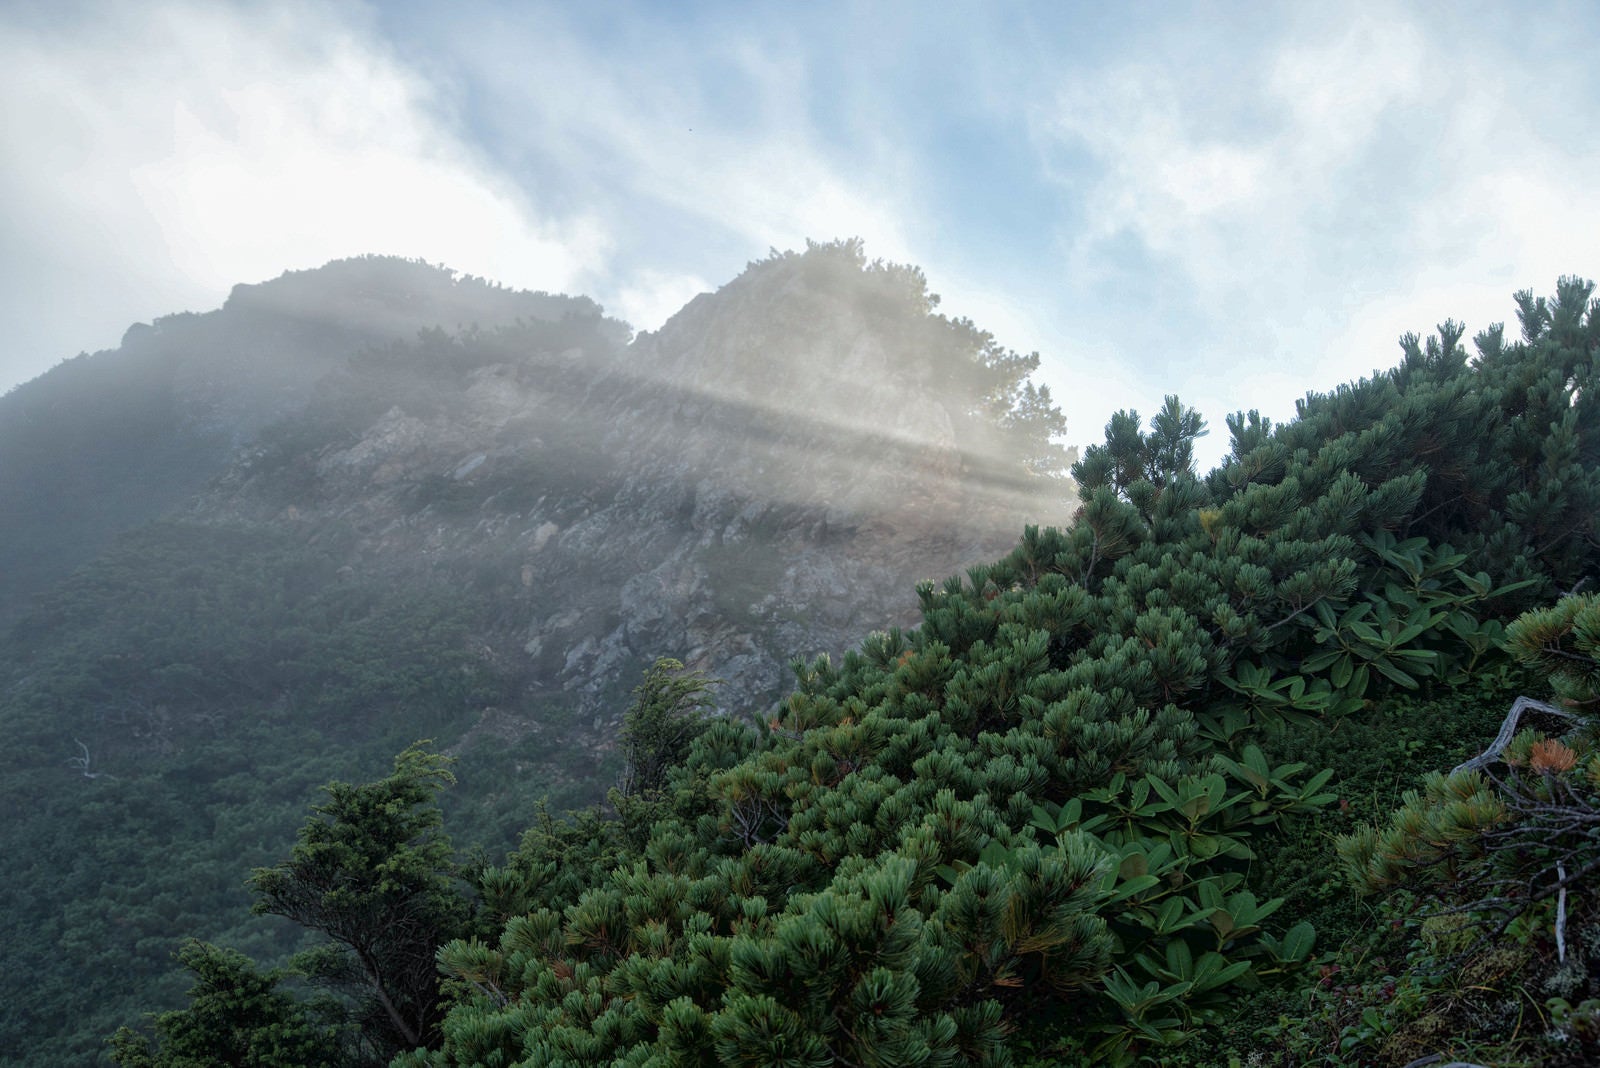 「登山道から見上げた差し込む陽光」の写真